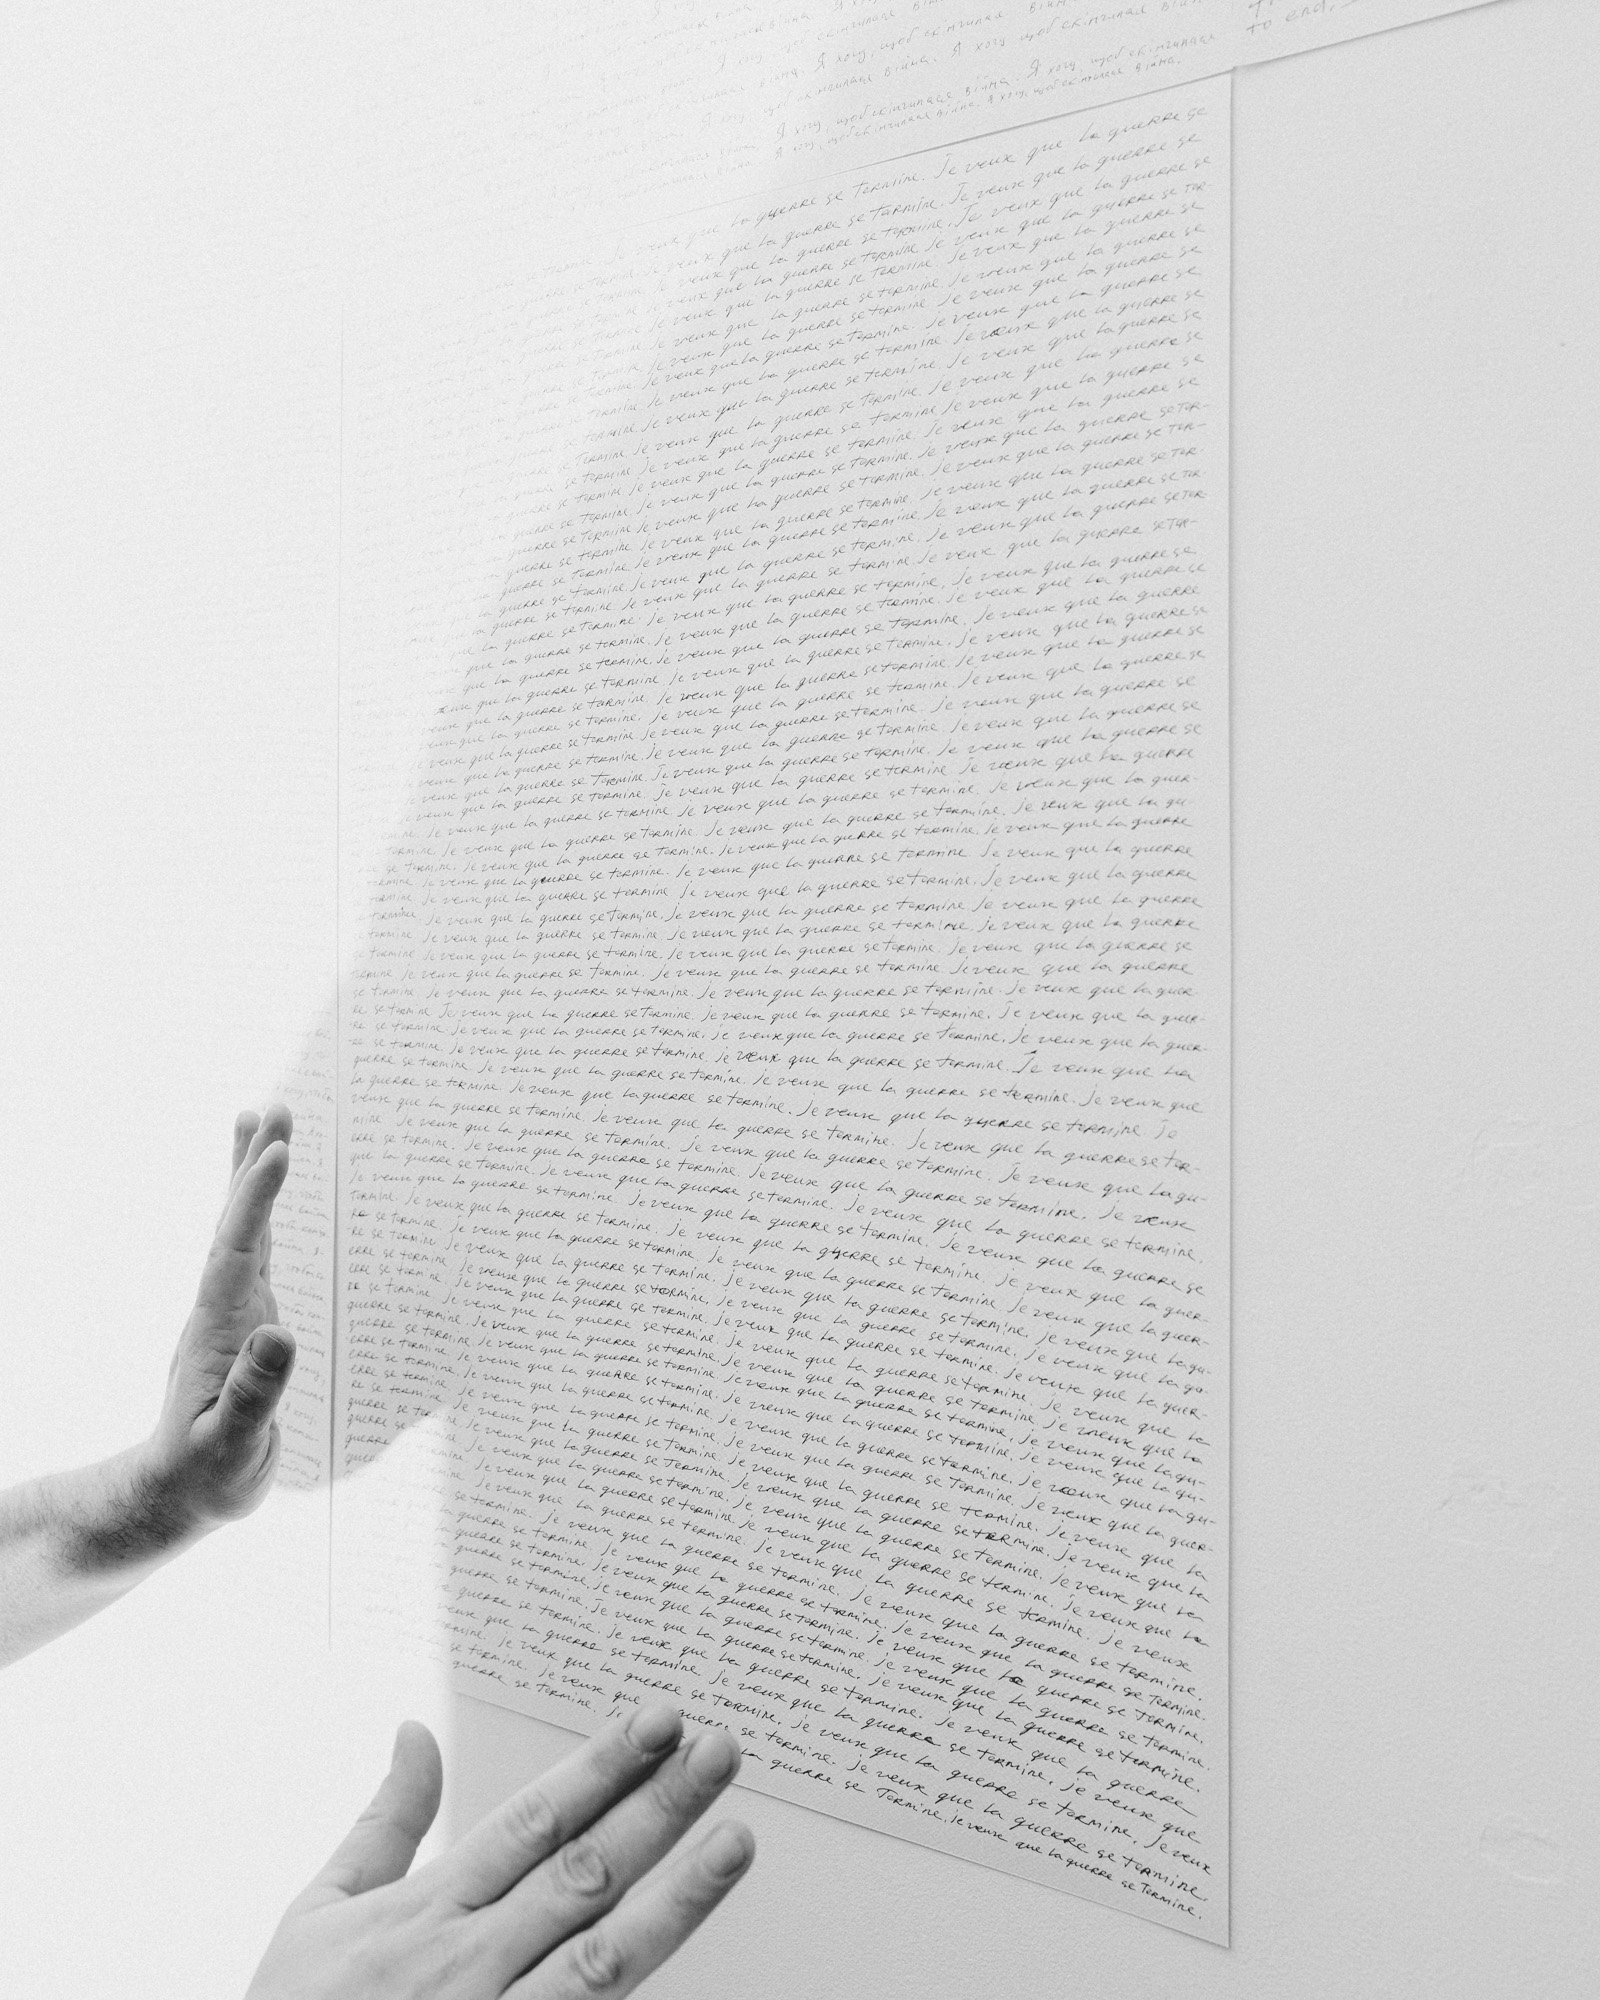  17 janvier 2023. Paris, France. L’artiste russe Andrey Kuzkin prépare son exposition à la galerie Hus dans le quartier de Montmartre. 